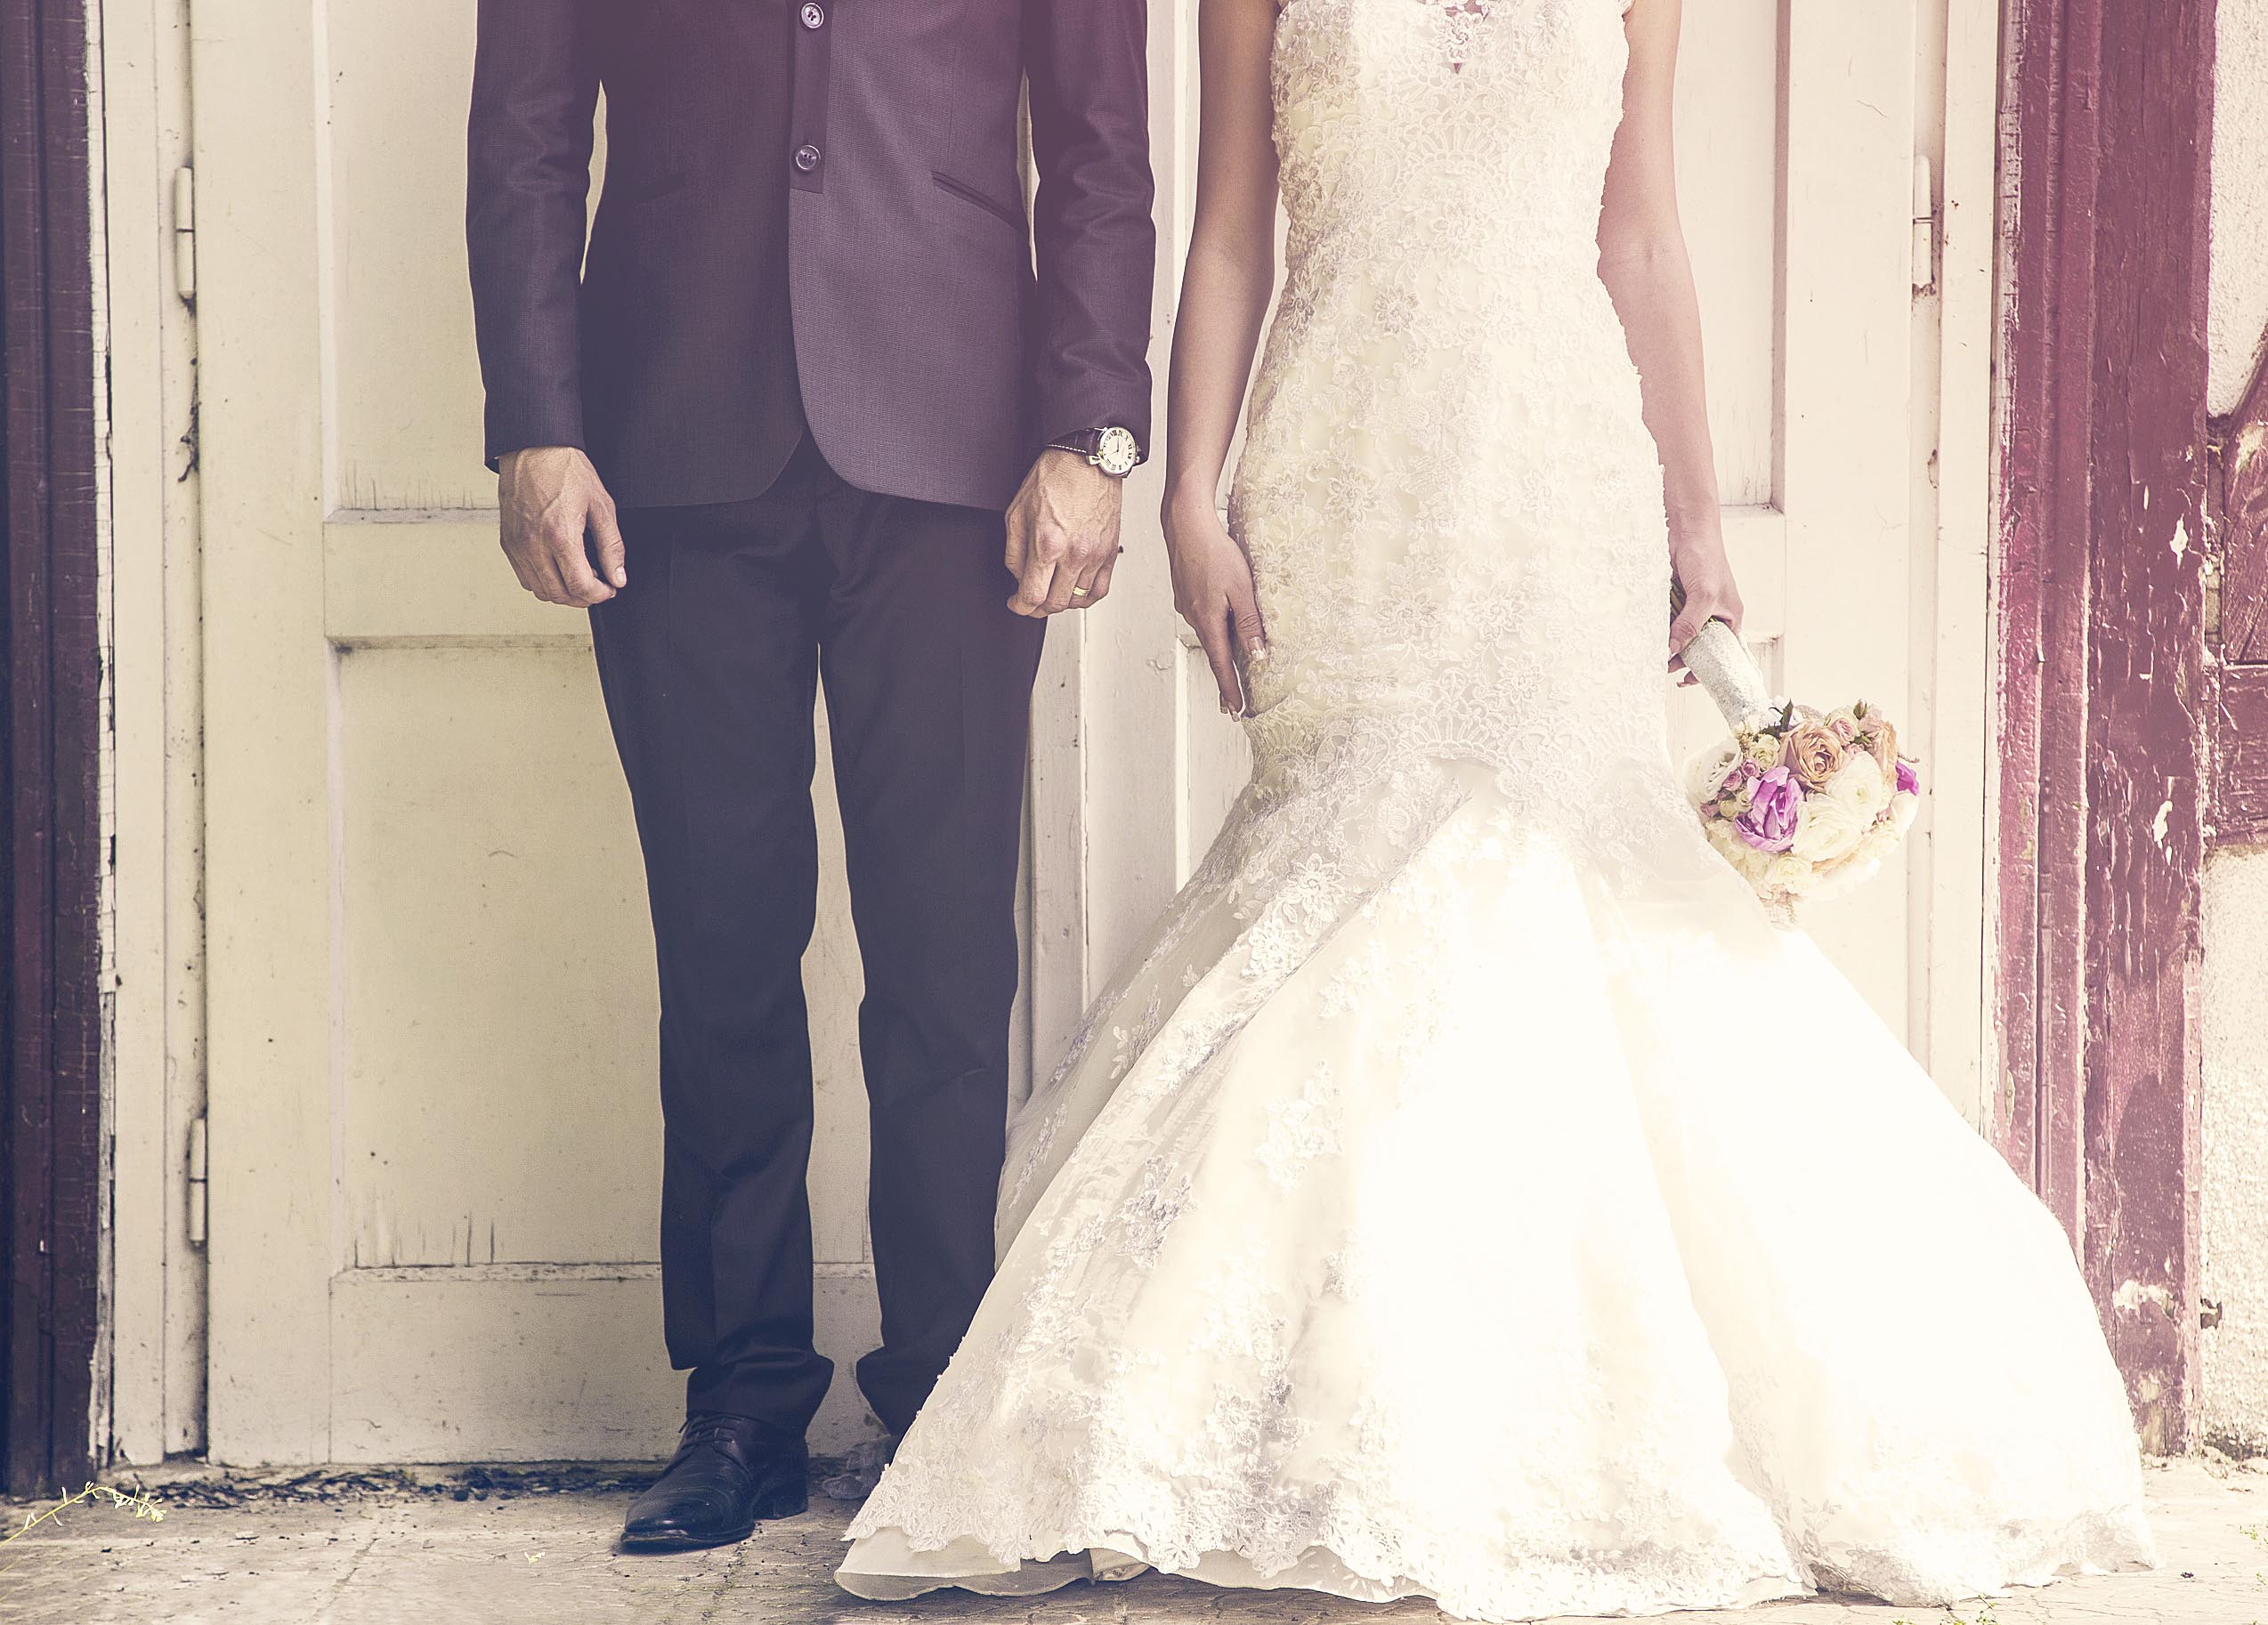 sposarsi in italia residenti all'estero - daniele panareo fotografo matrimonio lecce